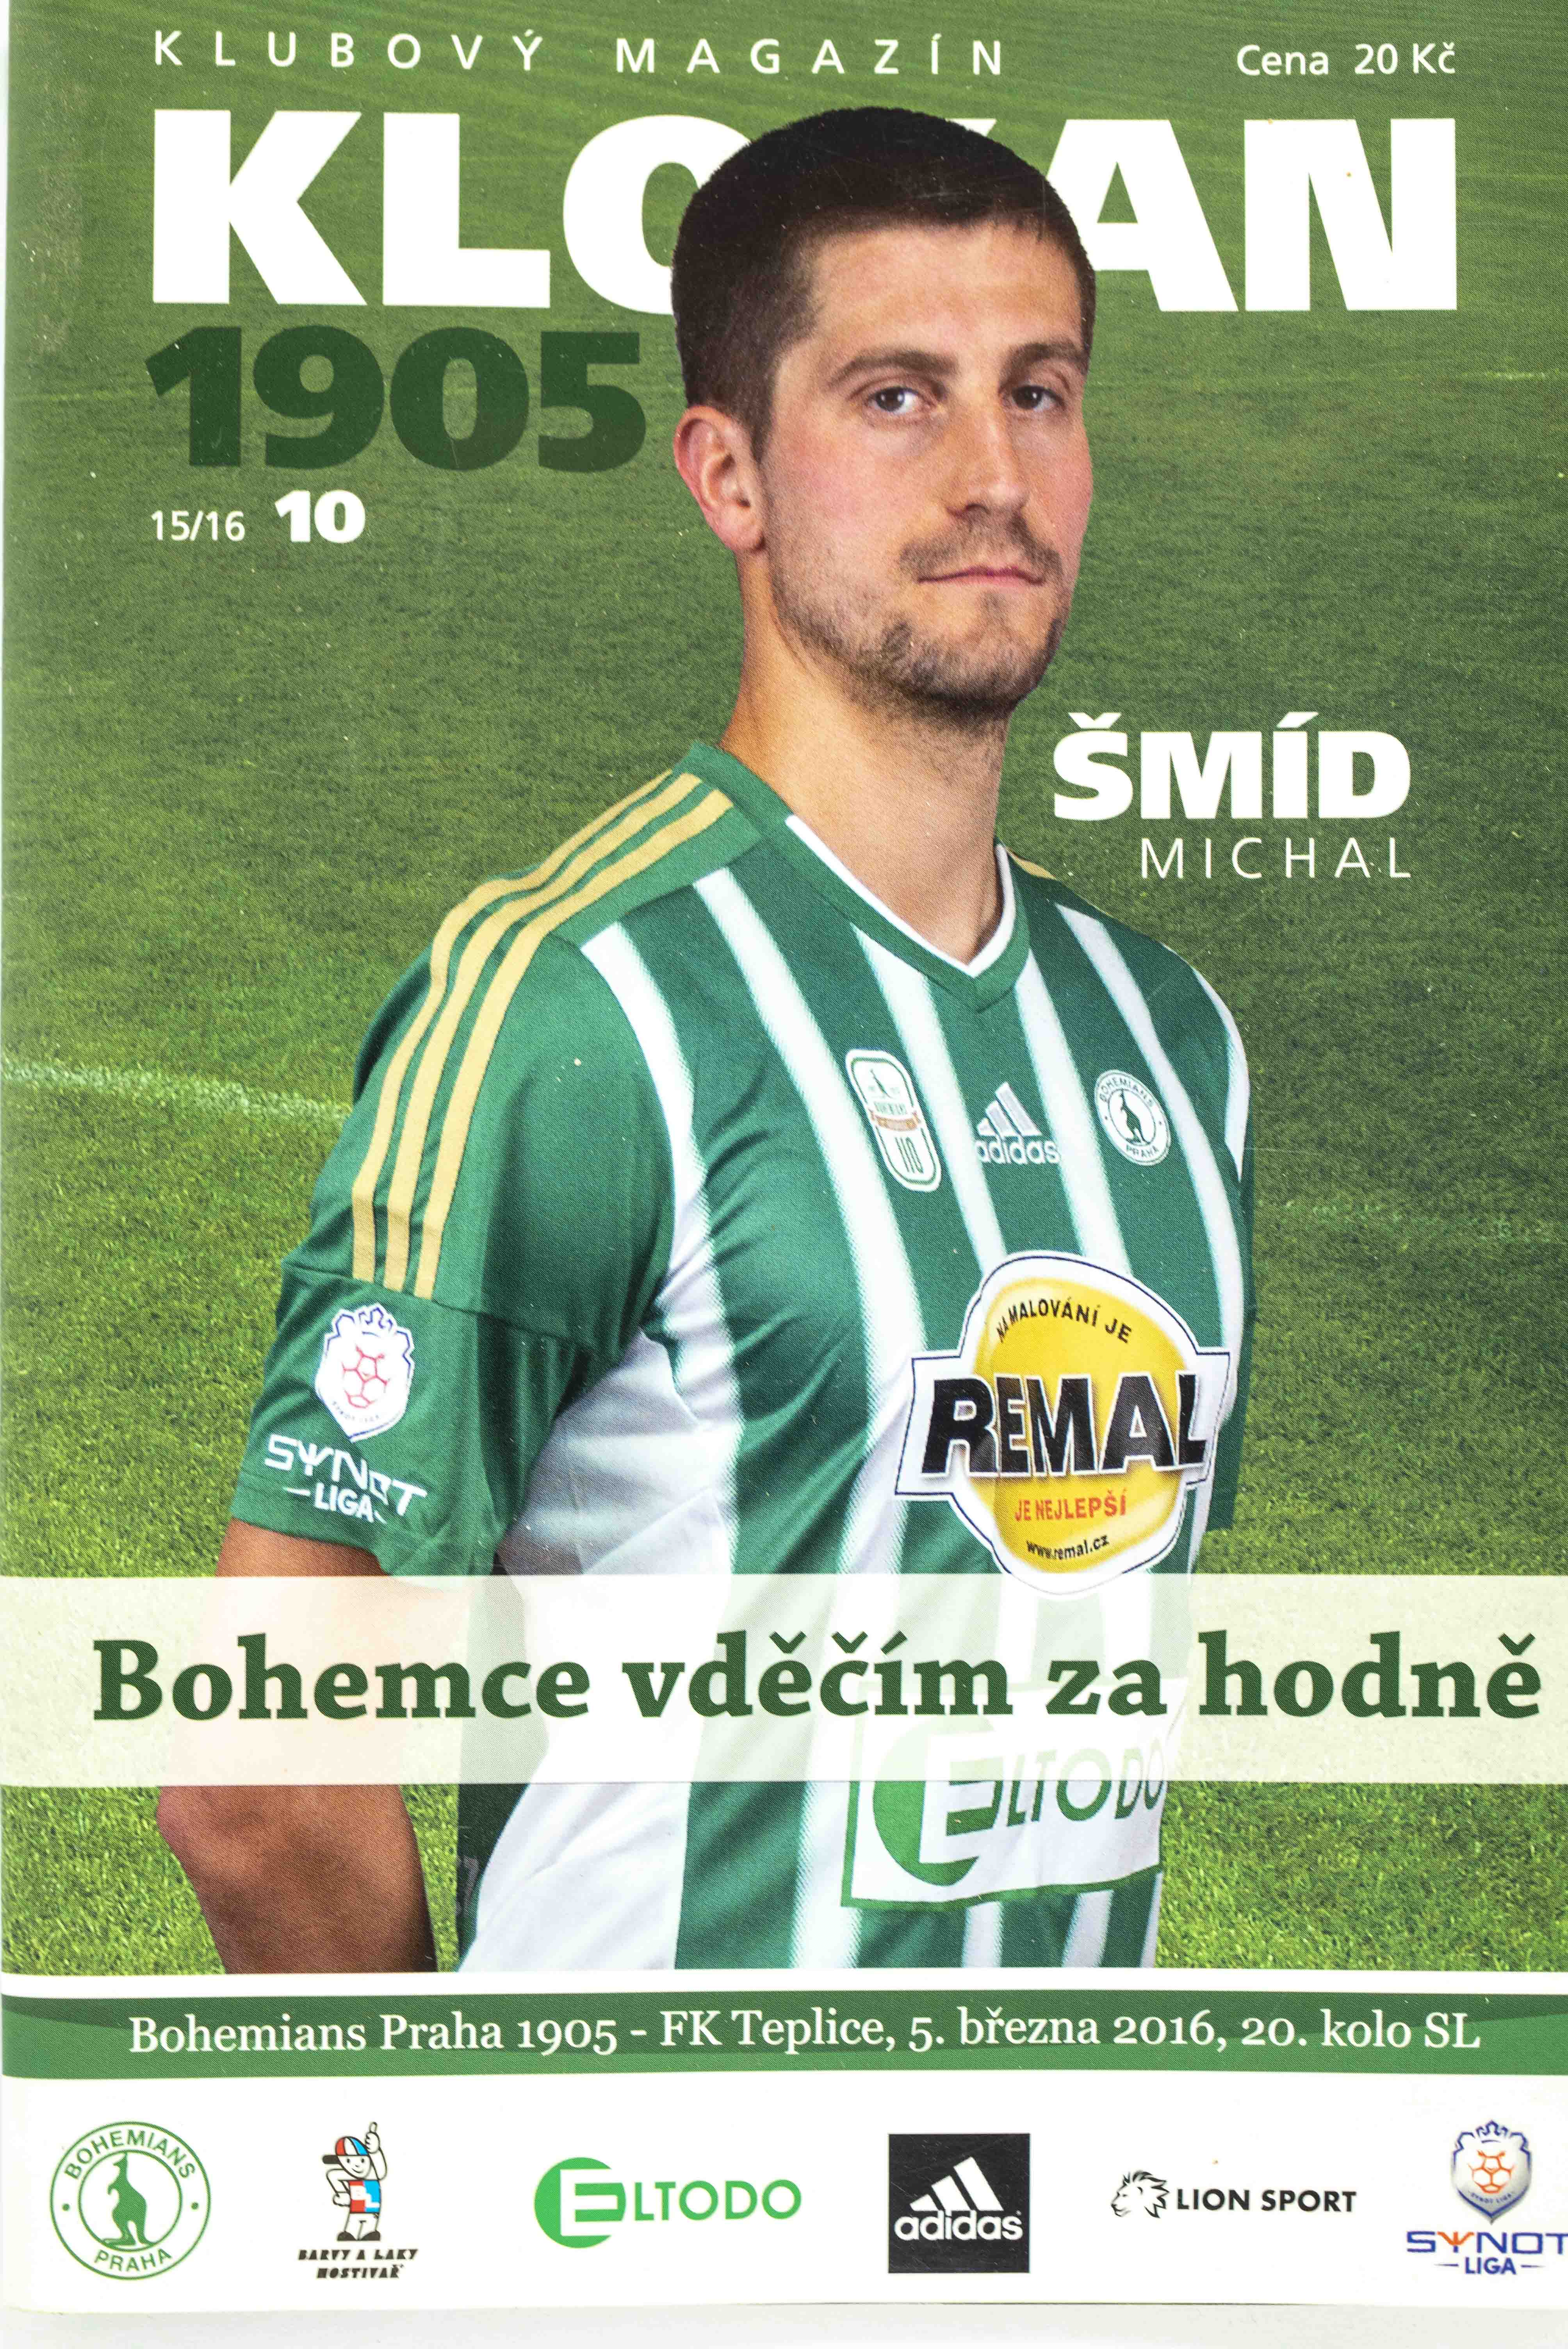 Program Klokan 1905, Bohemians 1905 v. FK Teplice, 10/2015